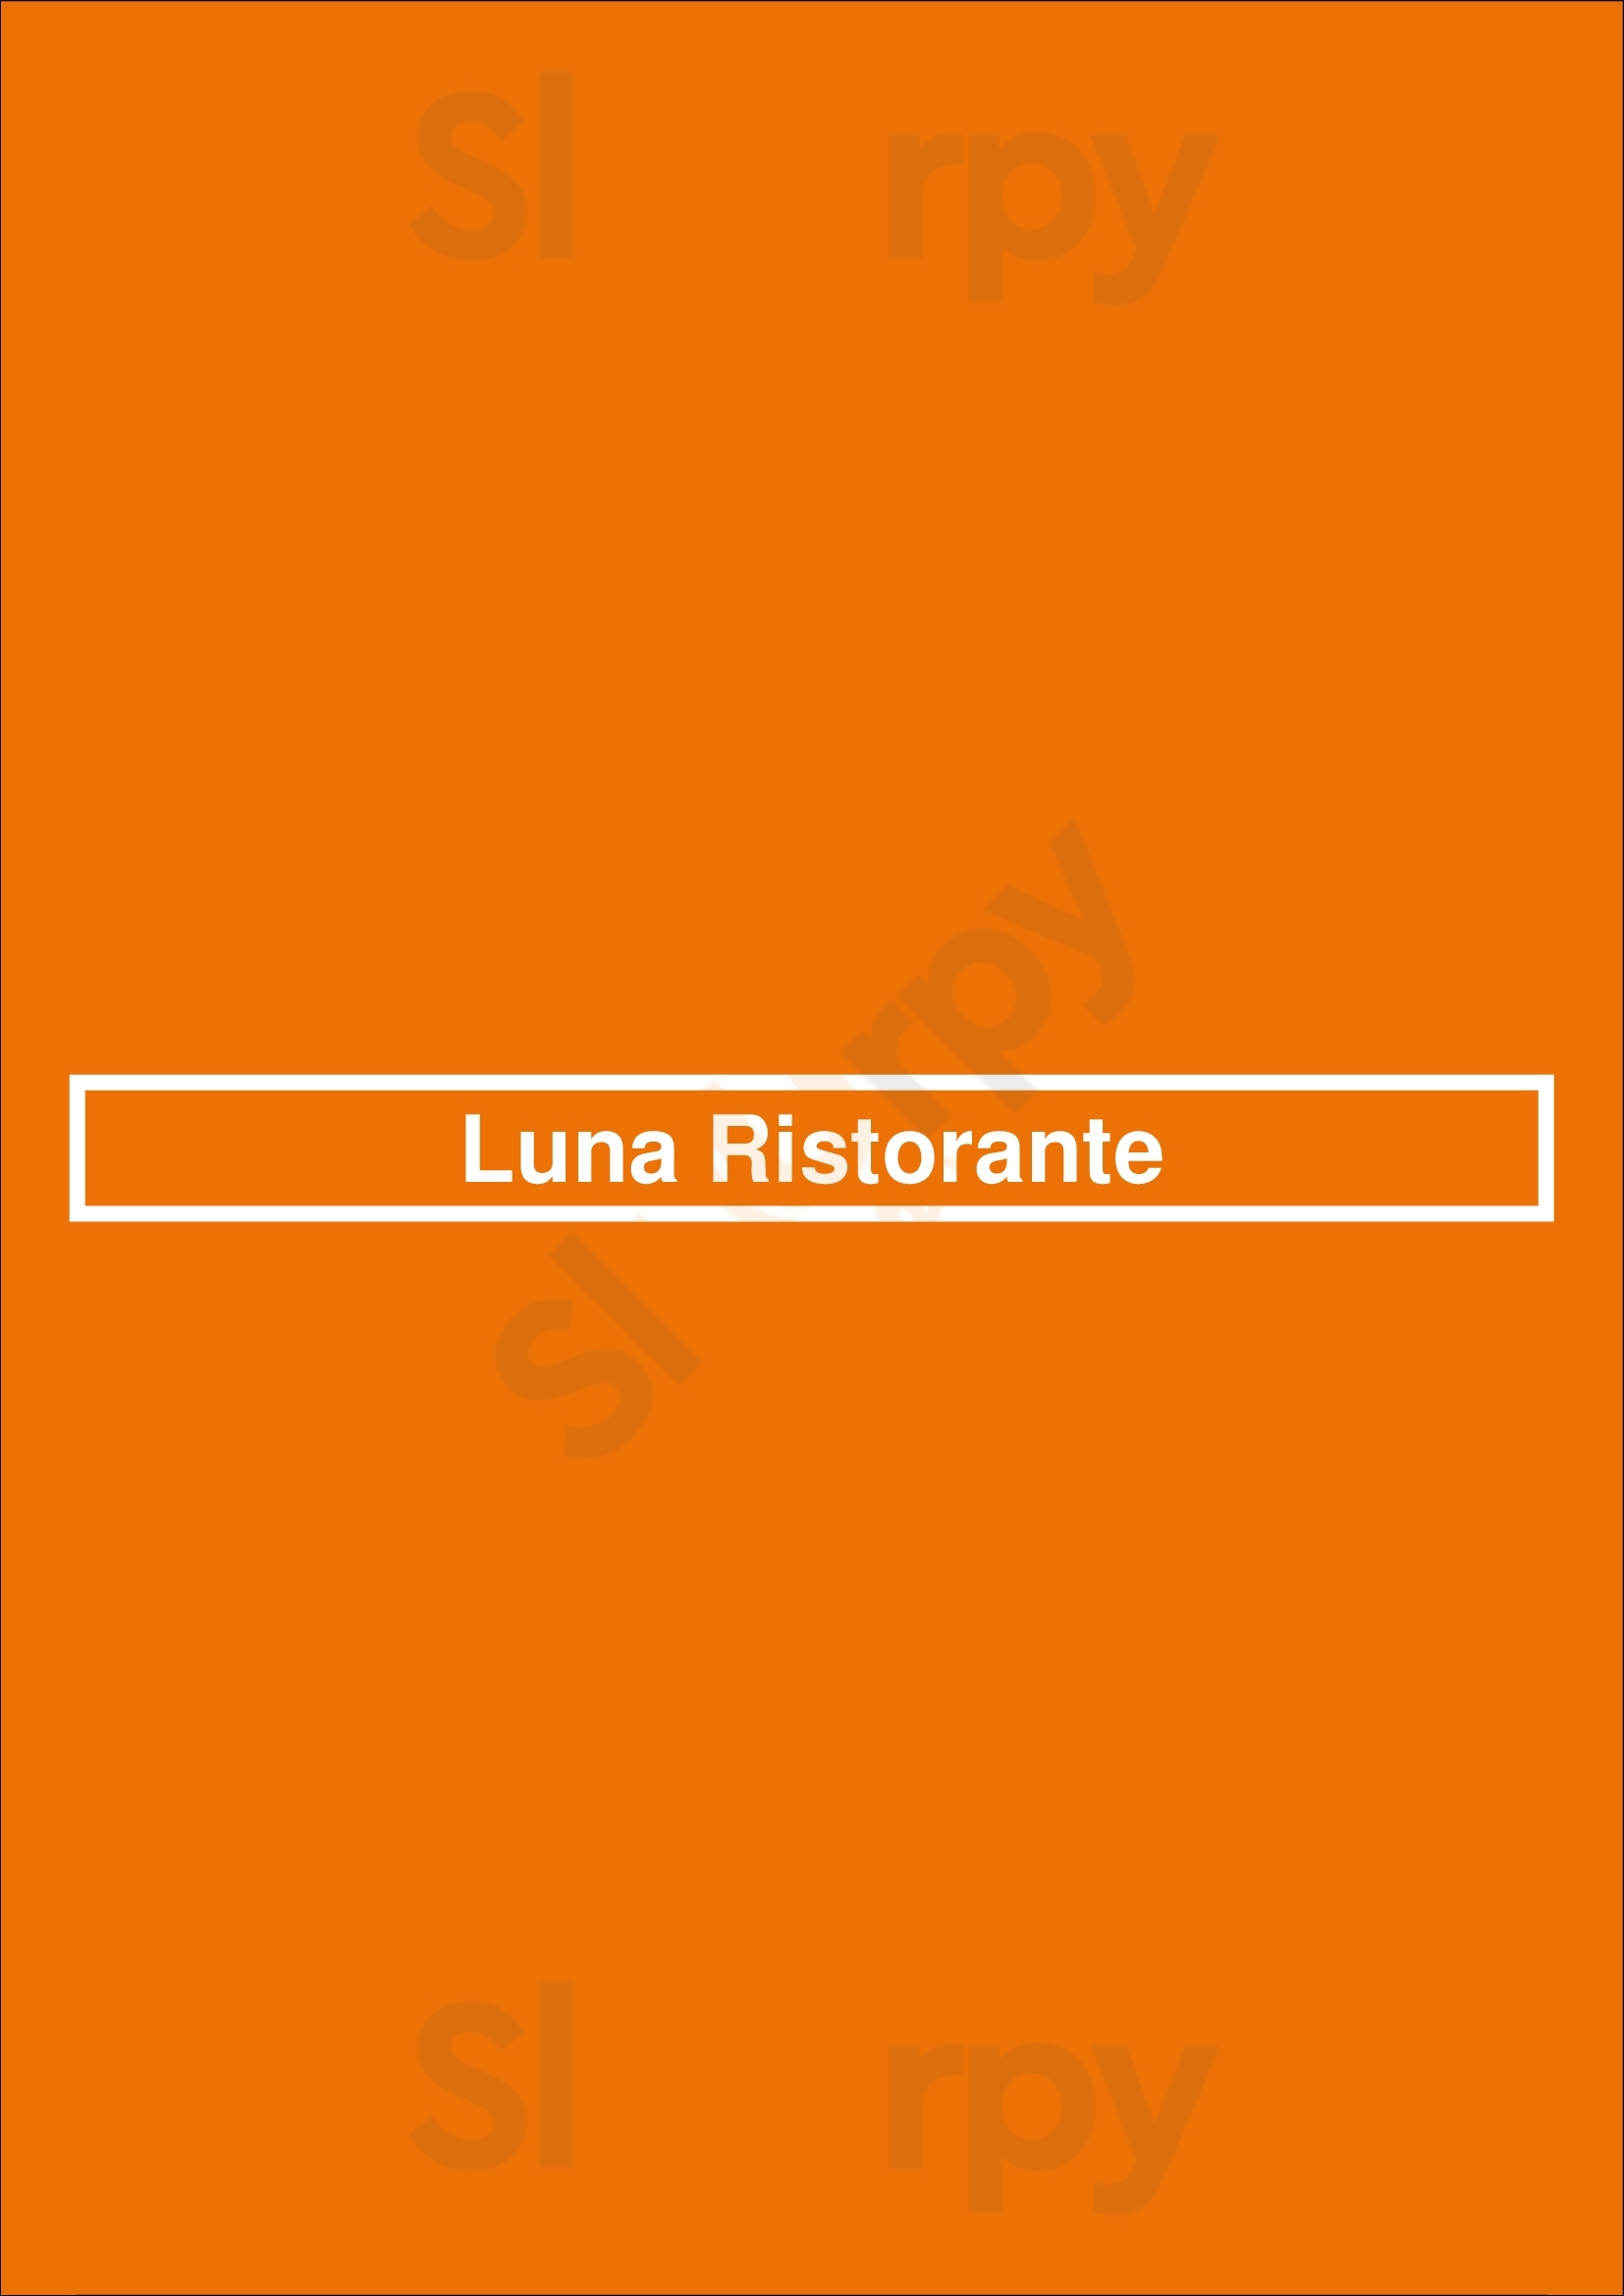 Luna Ristorante Newmarket Menu - 1